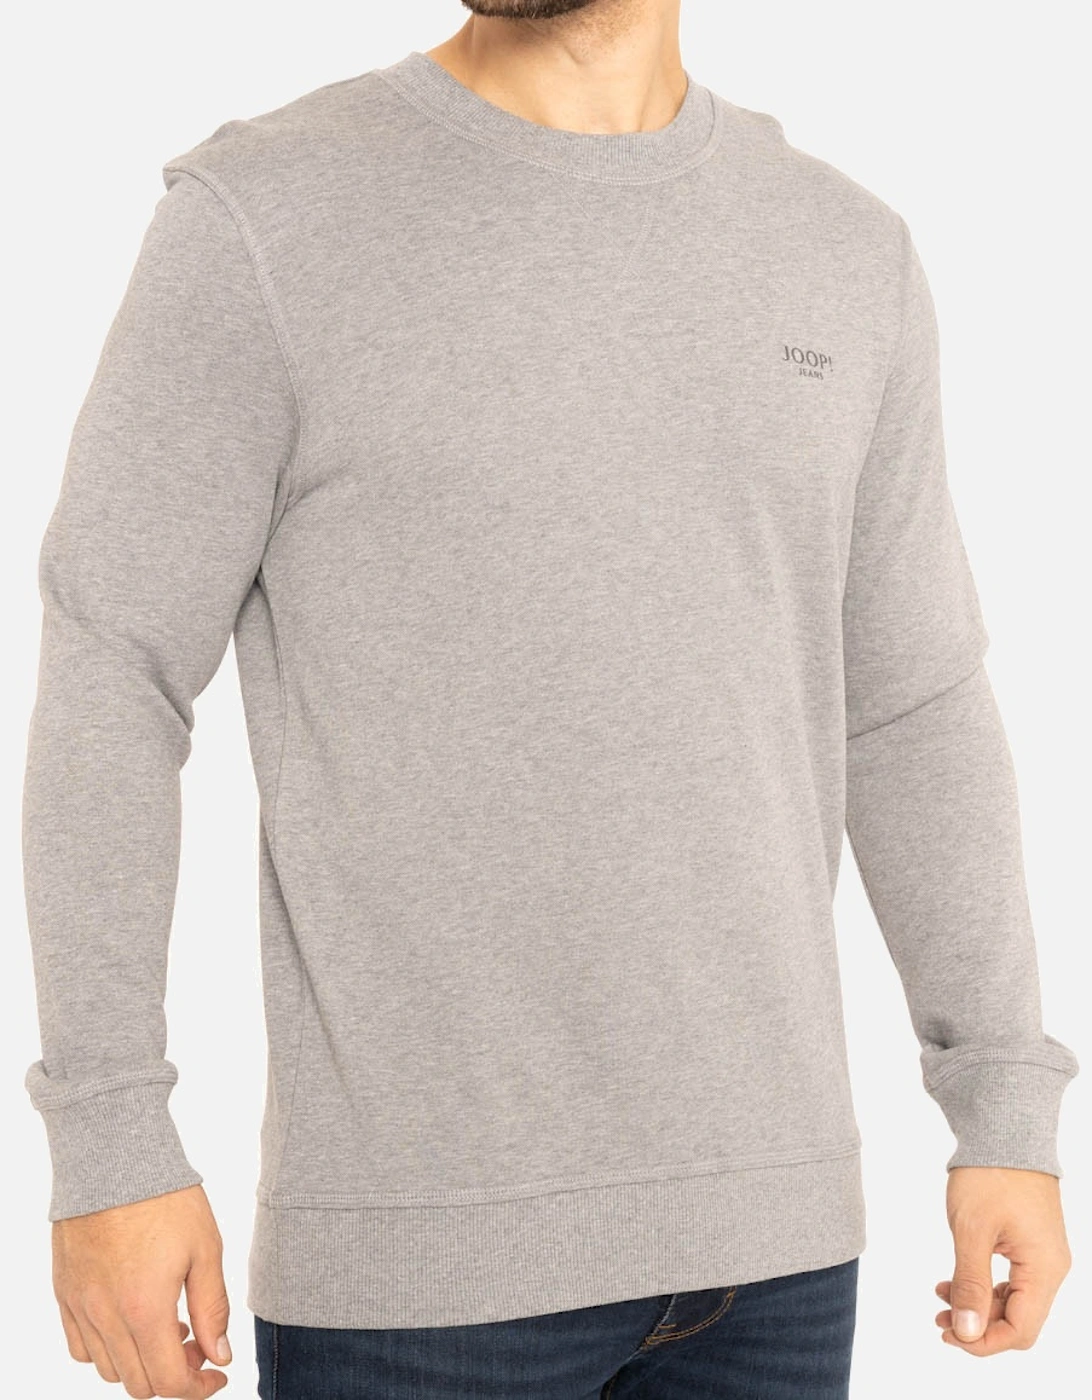 Joop Mens Crew Sweatshirt (Silver)